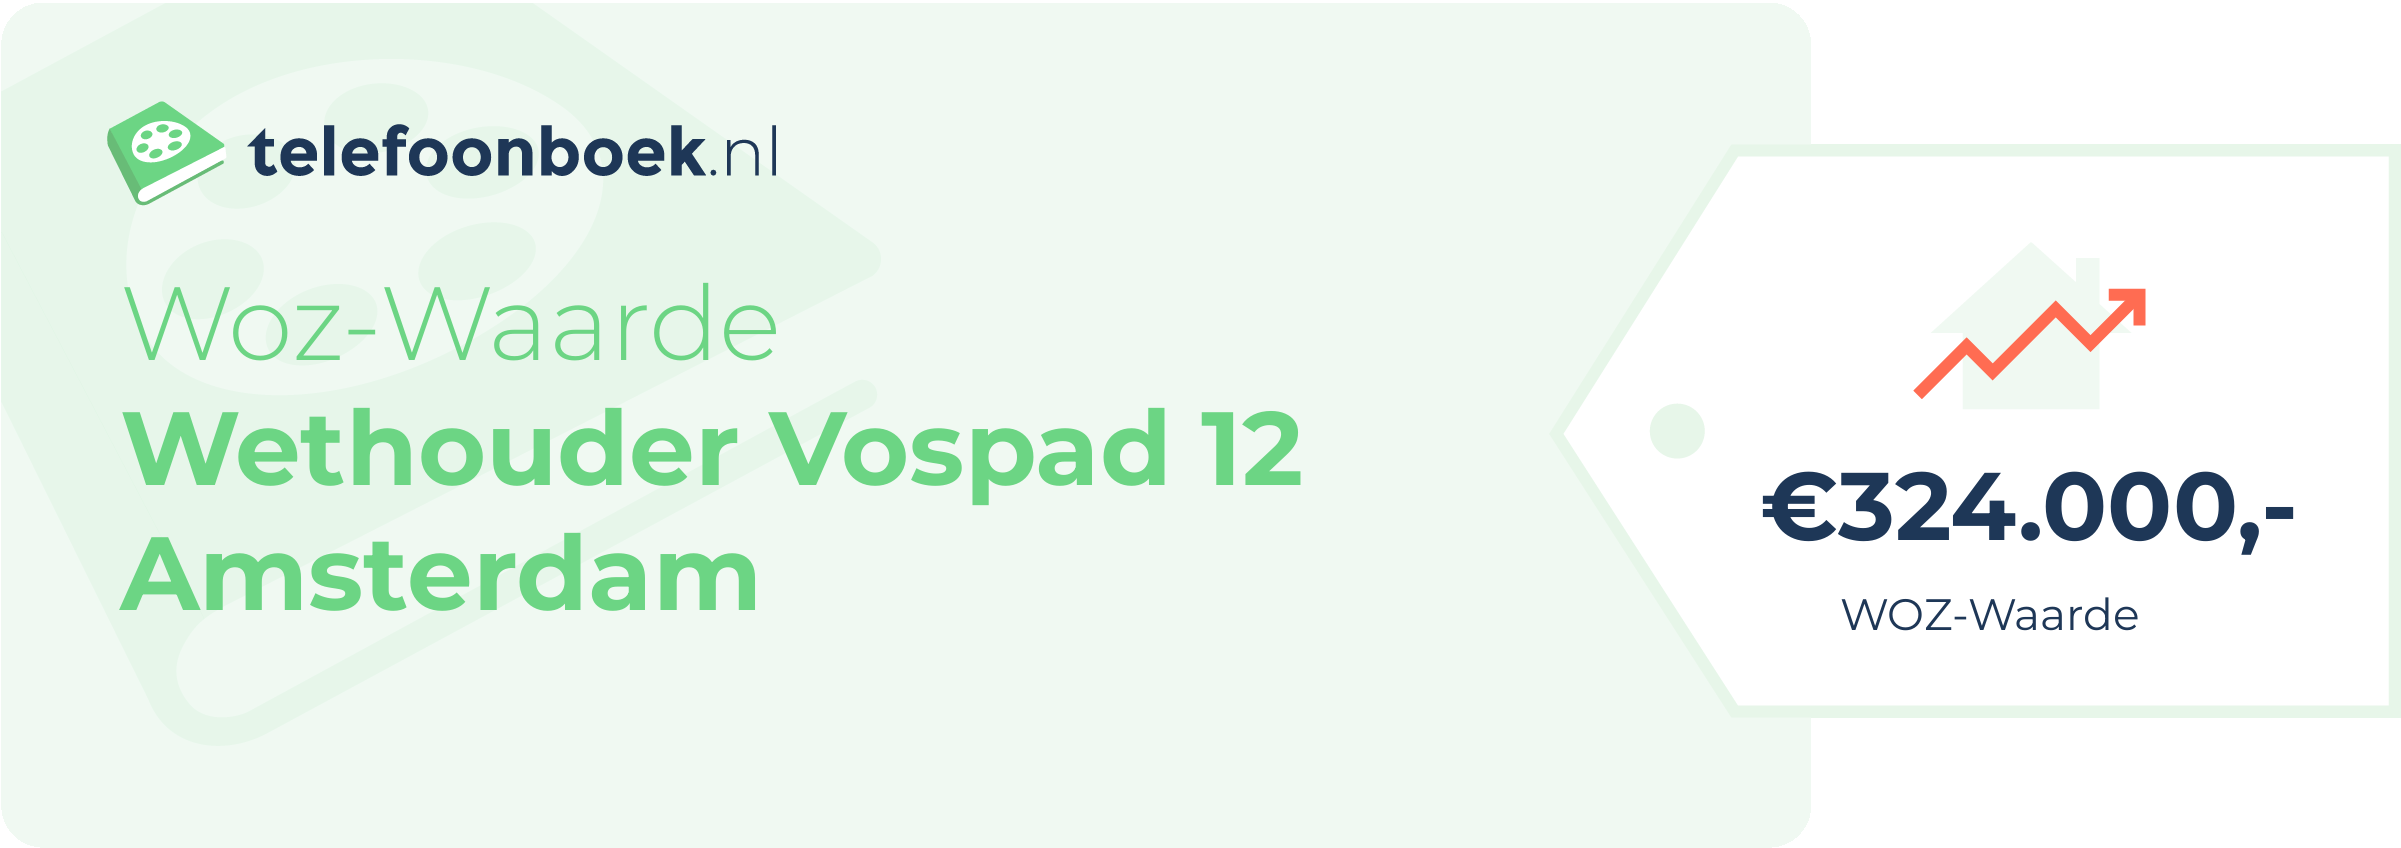 WOZ-waarde Wethouder Vospad 12 Amsterdam